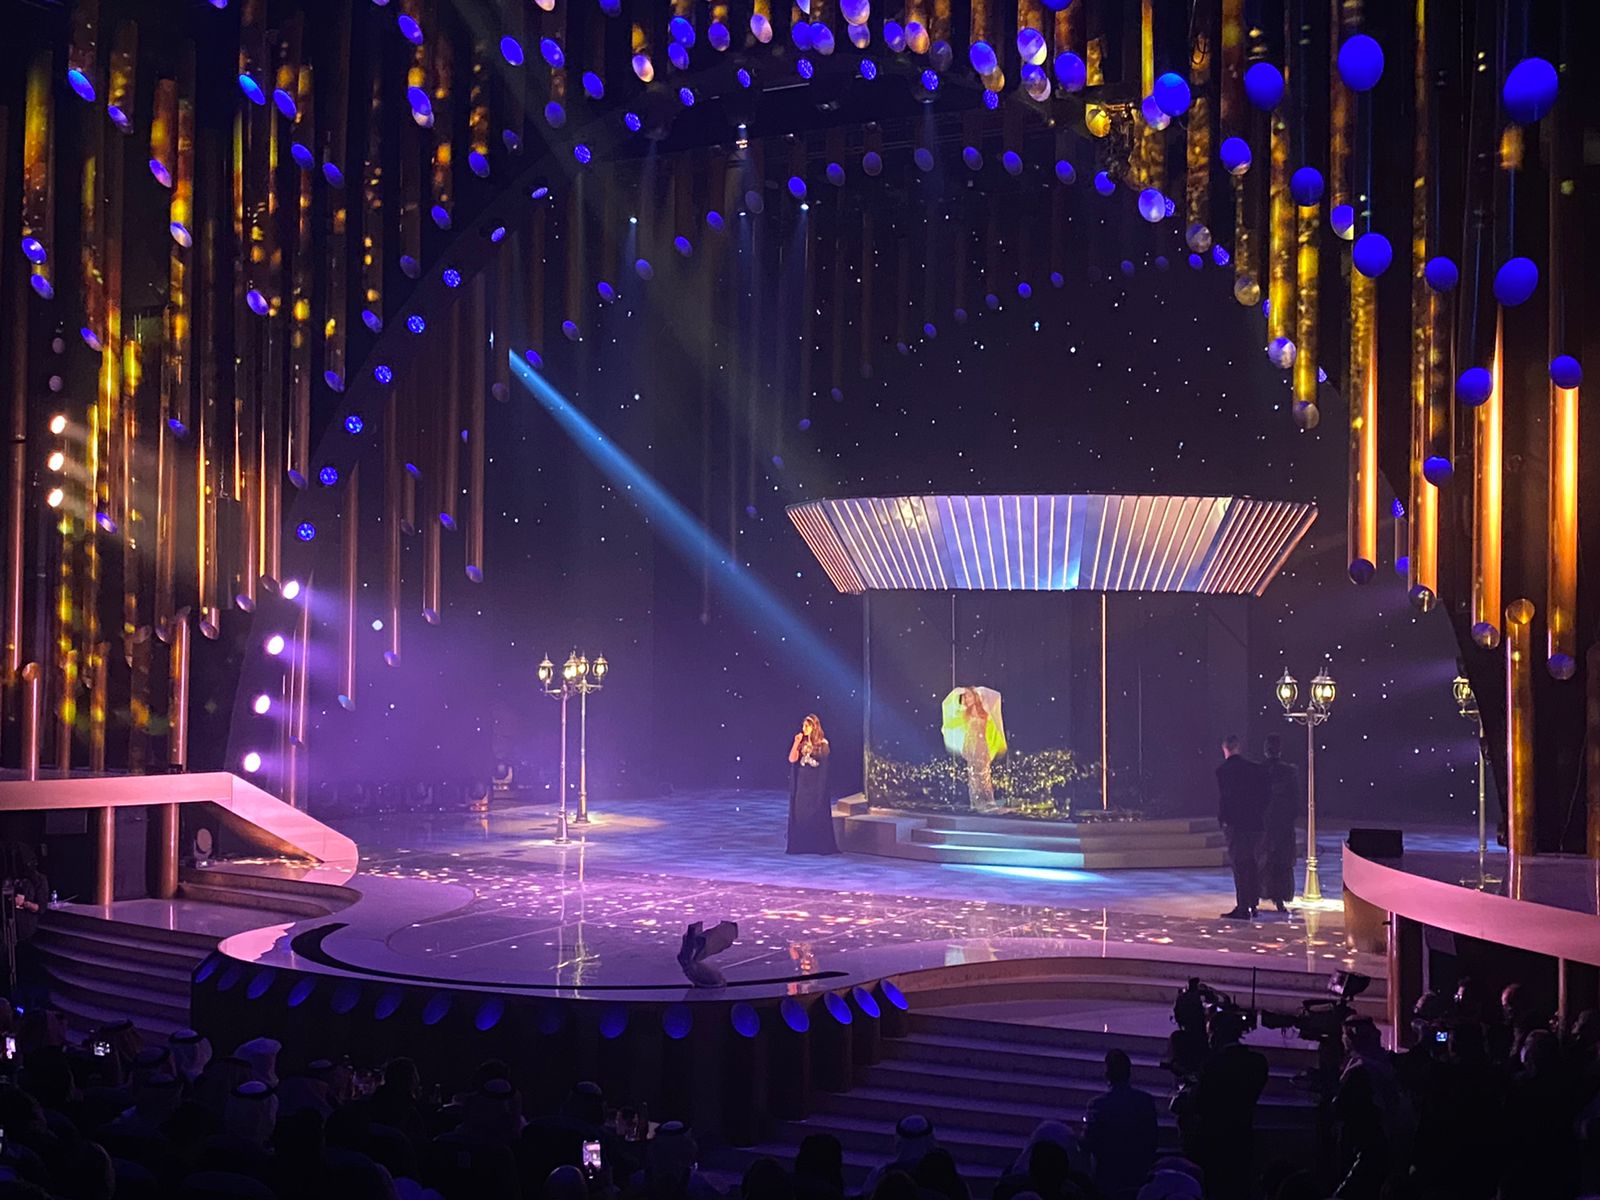 إليسا تغني ديو حلوة يابلدي مع داليدا بخاصية الهولوجرام بحفل جوائز JOY AWARDS  (4)